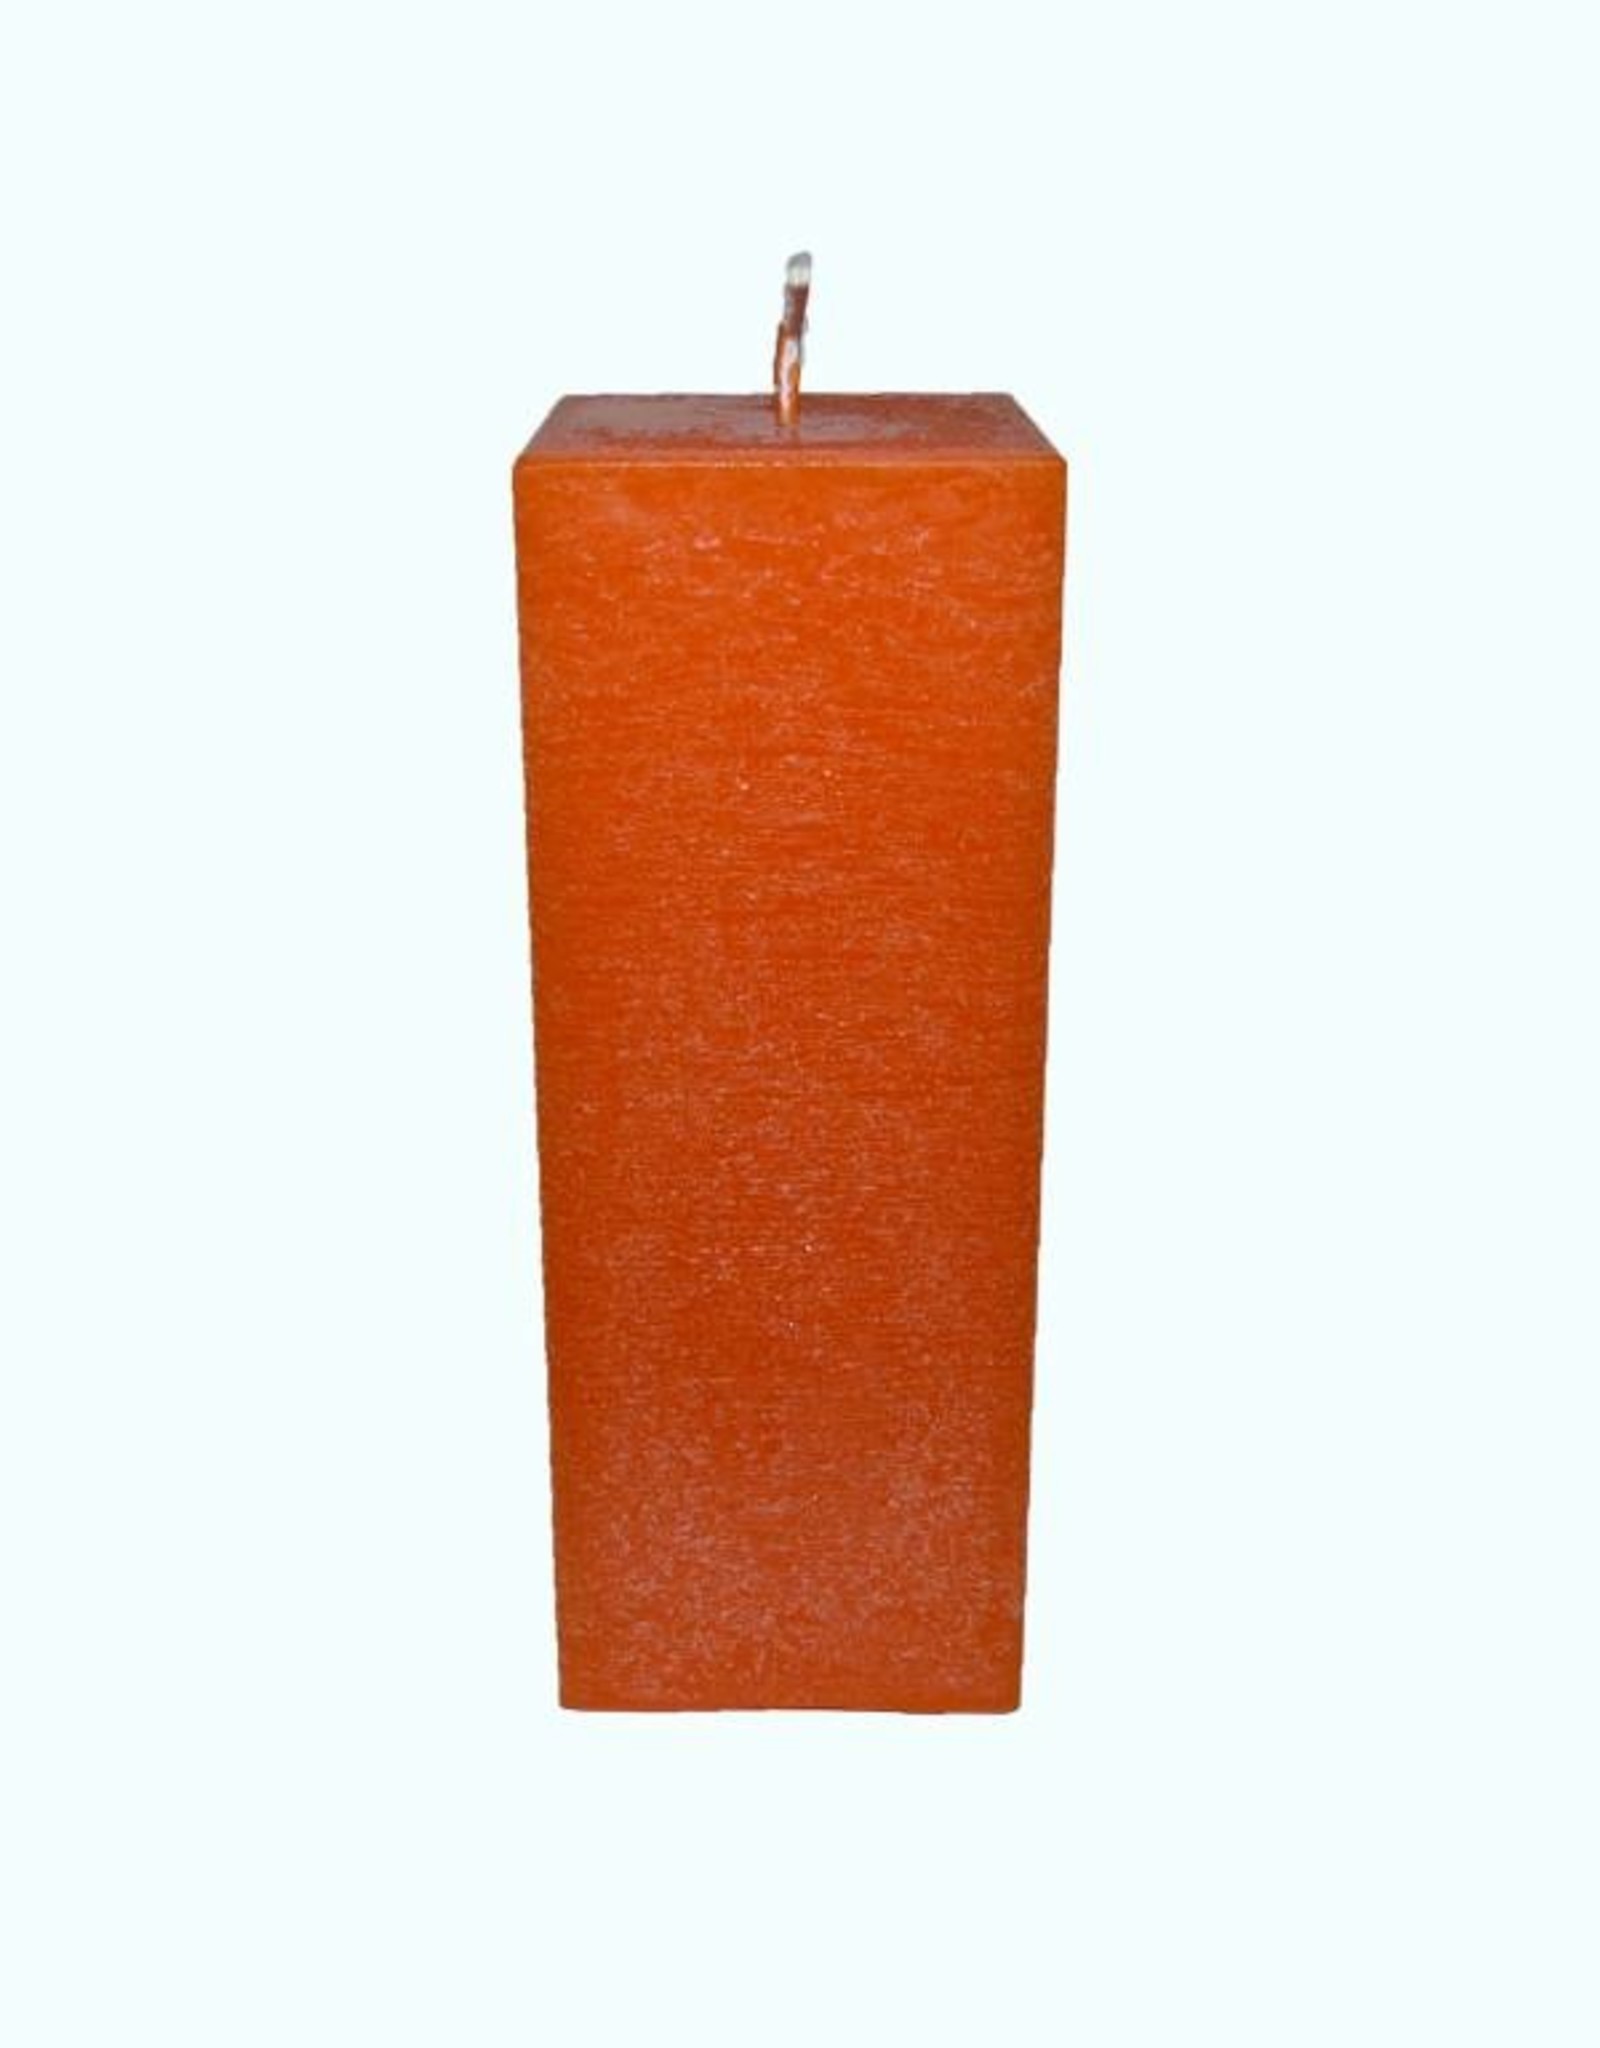 Oranje vierkante kaars van zeer goede kwaliteit